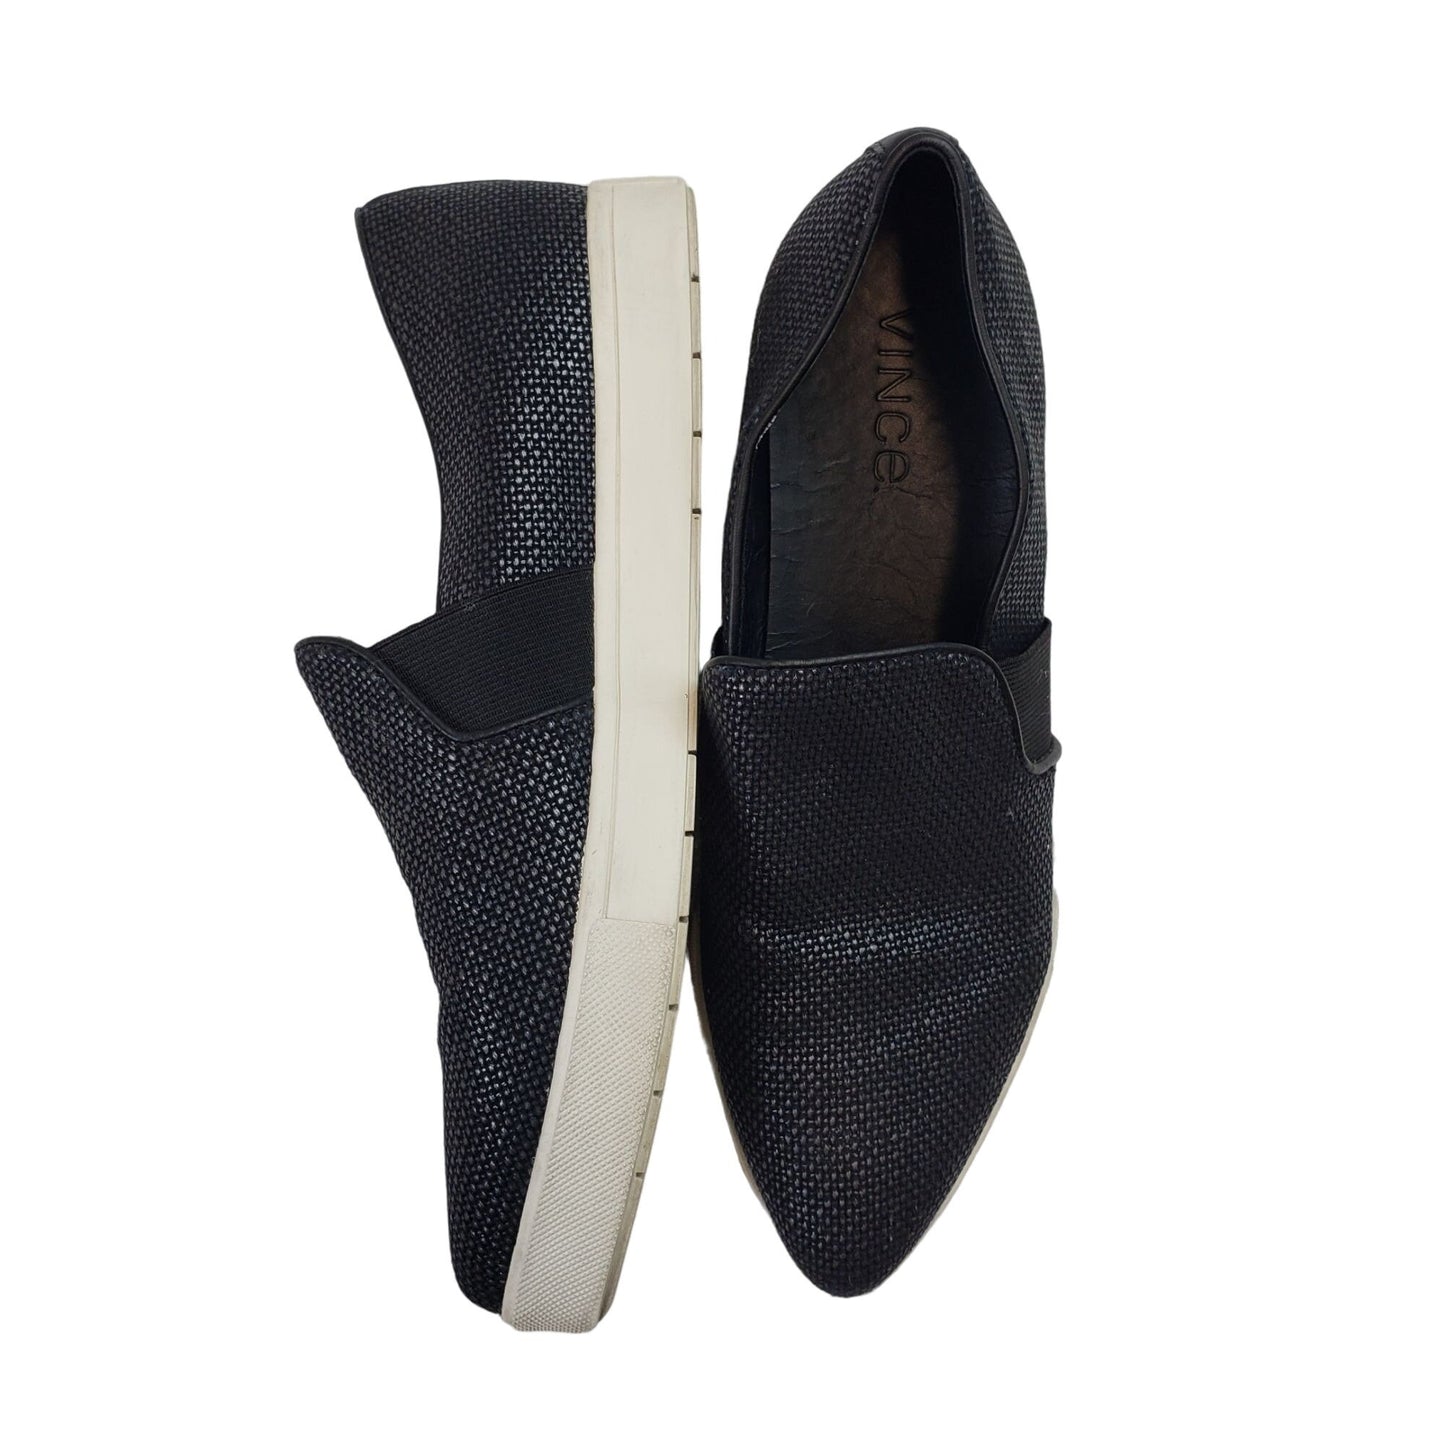 Vince Pierce Point-Toe Woven Slip-On Sneakers Size 6.5